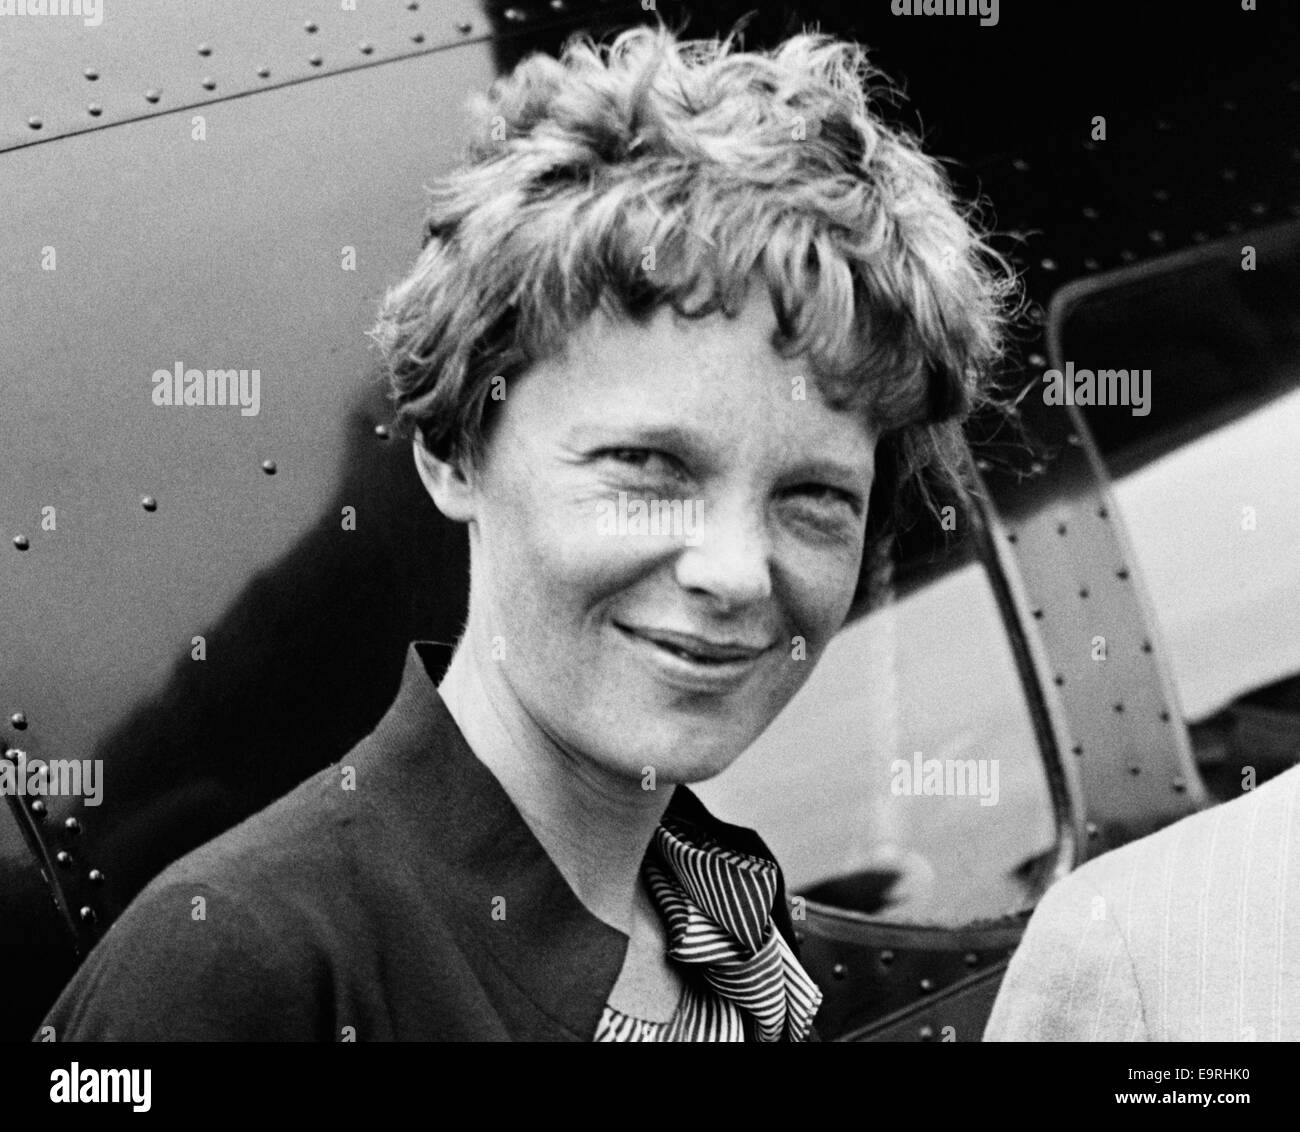 Photo d'époque de la pionnière et auteure de l'aviation américaine Amelia Earhart (1897 – déclarée morte en 1939) – Earhart et son navigateur Fred Noonan ont connu une célèbre disparition en 1937 alors qu'elle essayait de devenir la première femme à effectuer un vol de navigation du globe. Photo prise en 1932. Banque D'Images